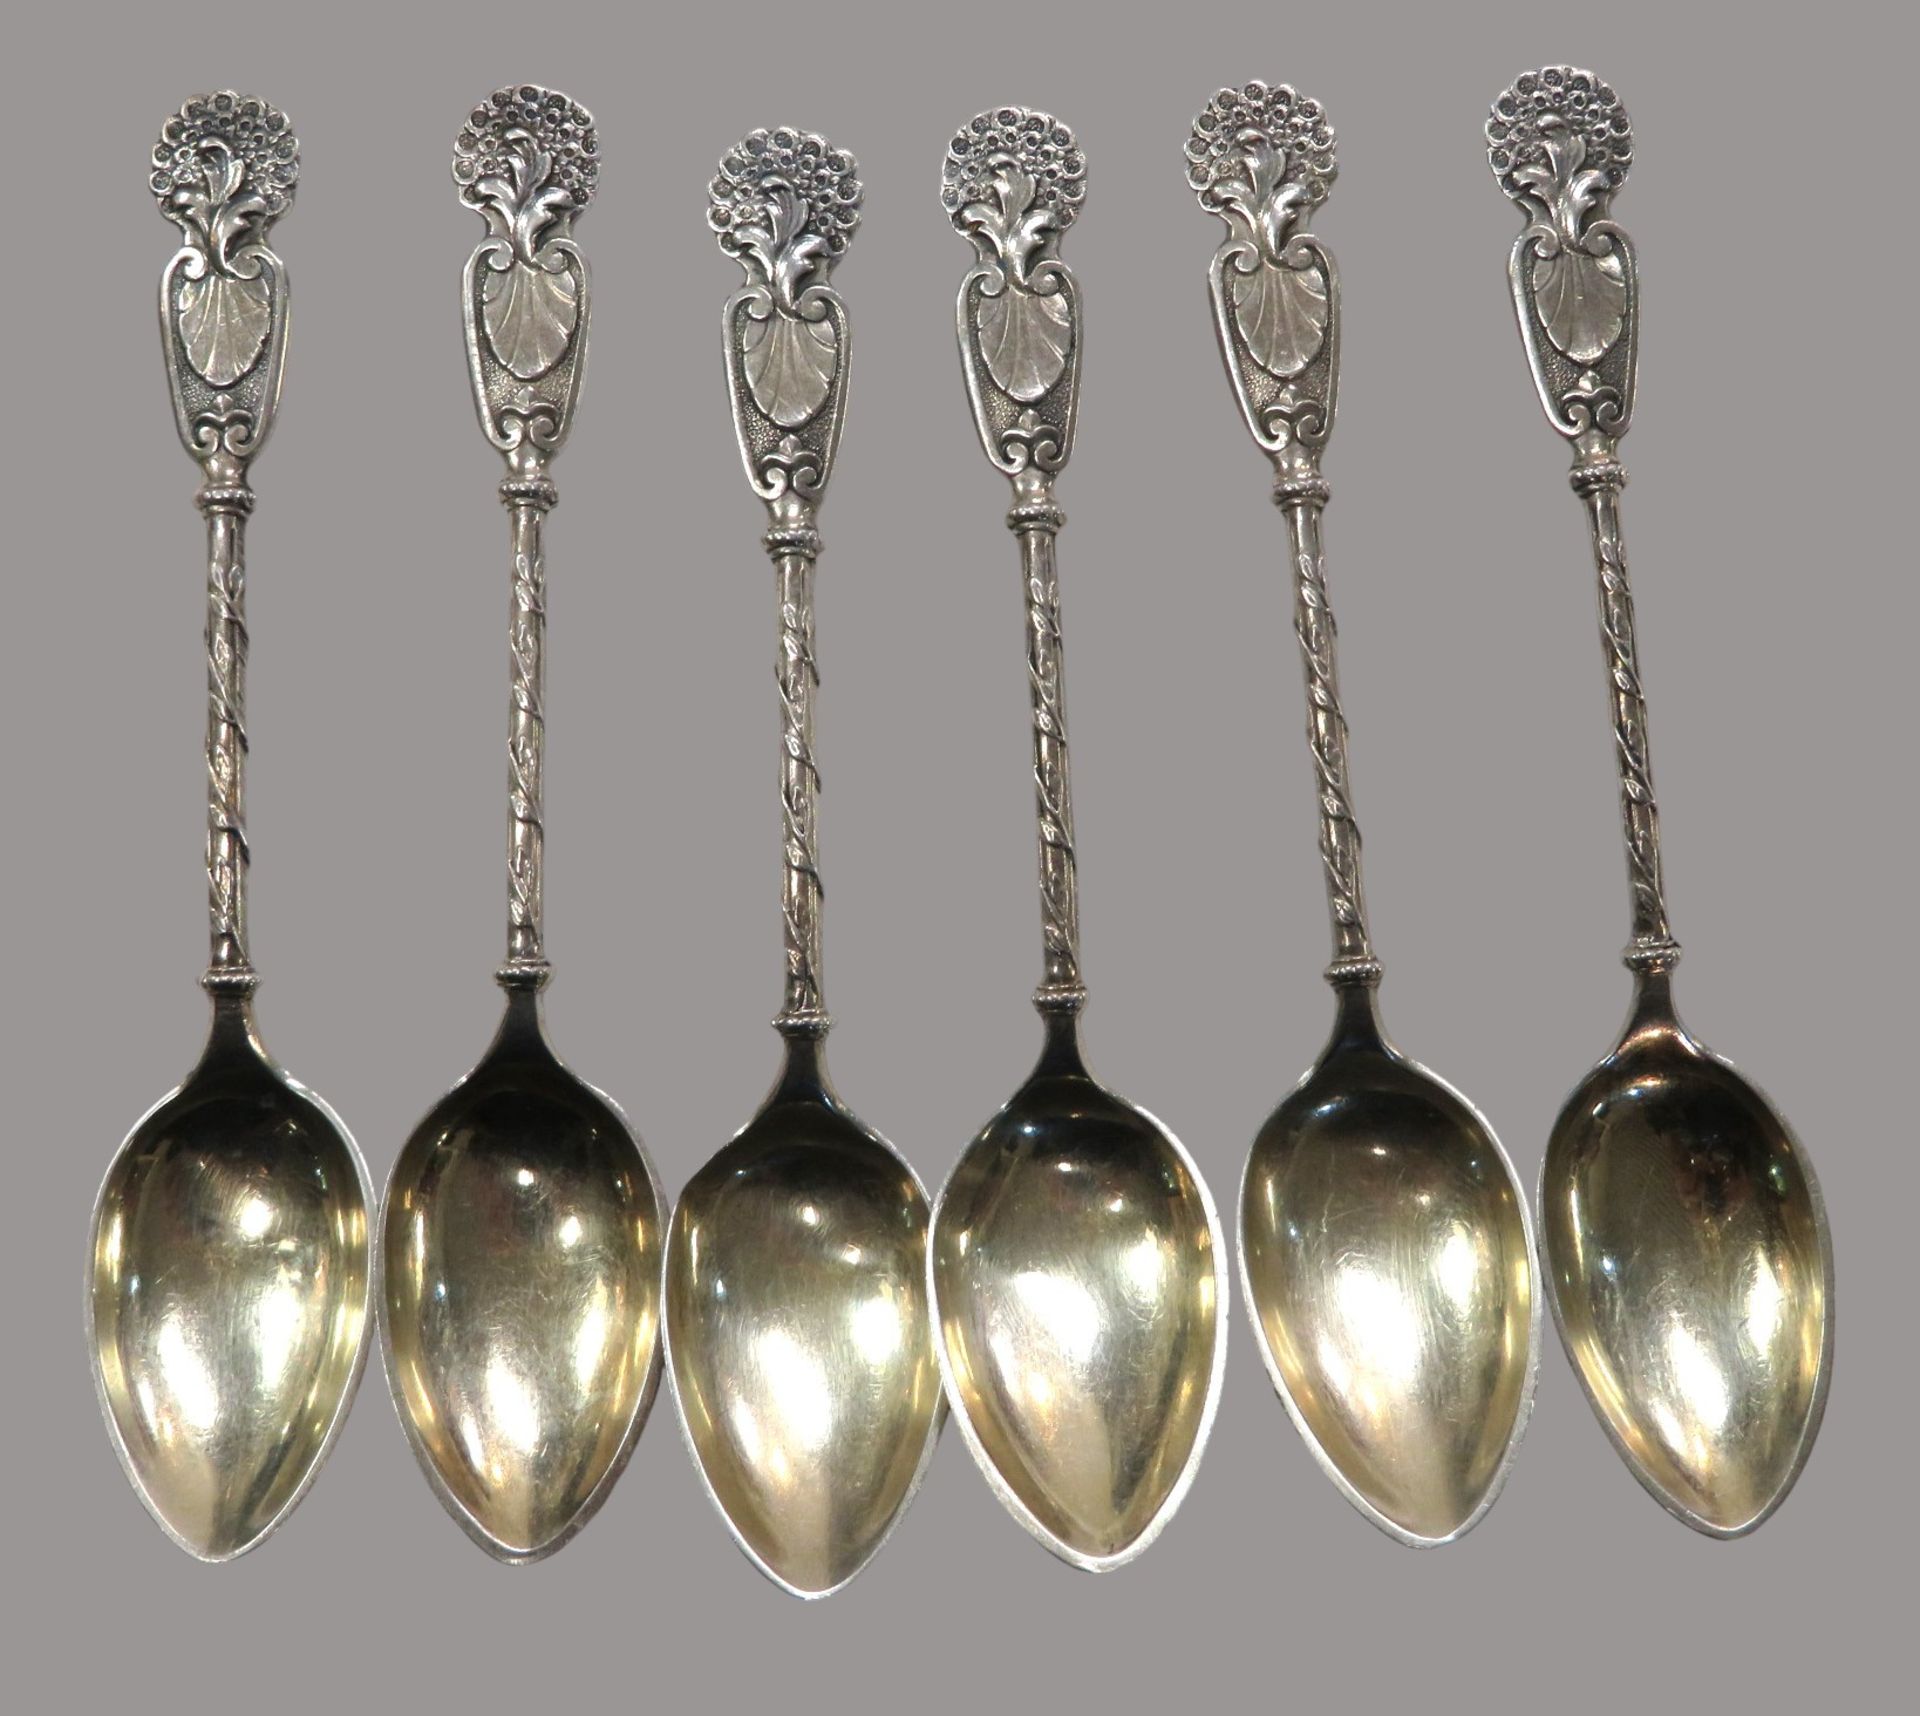 6 entzückende Teelöffel, Deutsch, um 1900, Silber 800/000, punziert, 66 g, Griffe mit reicher Dekor